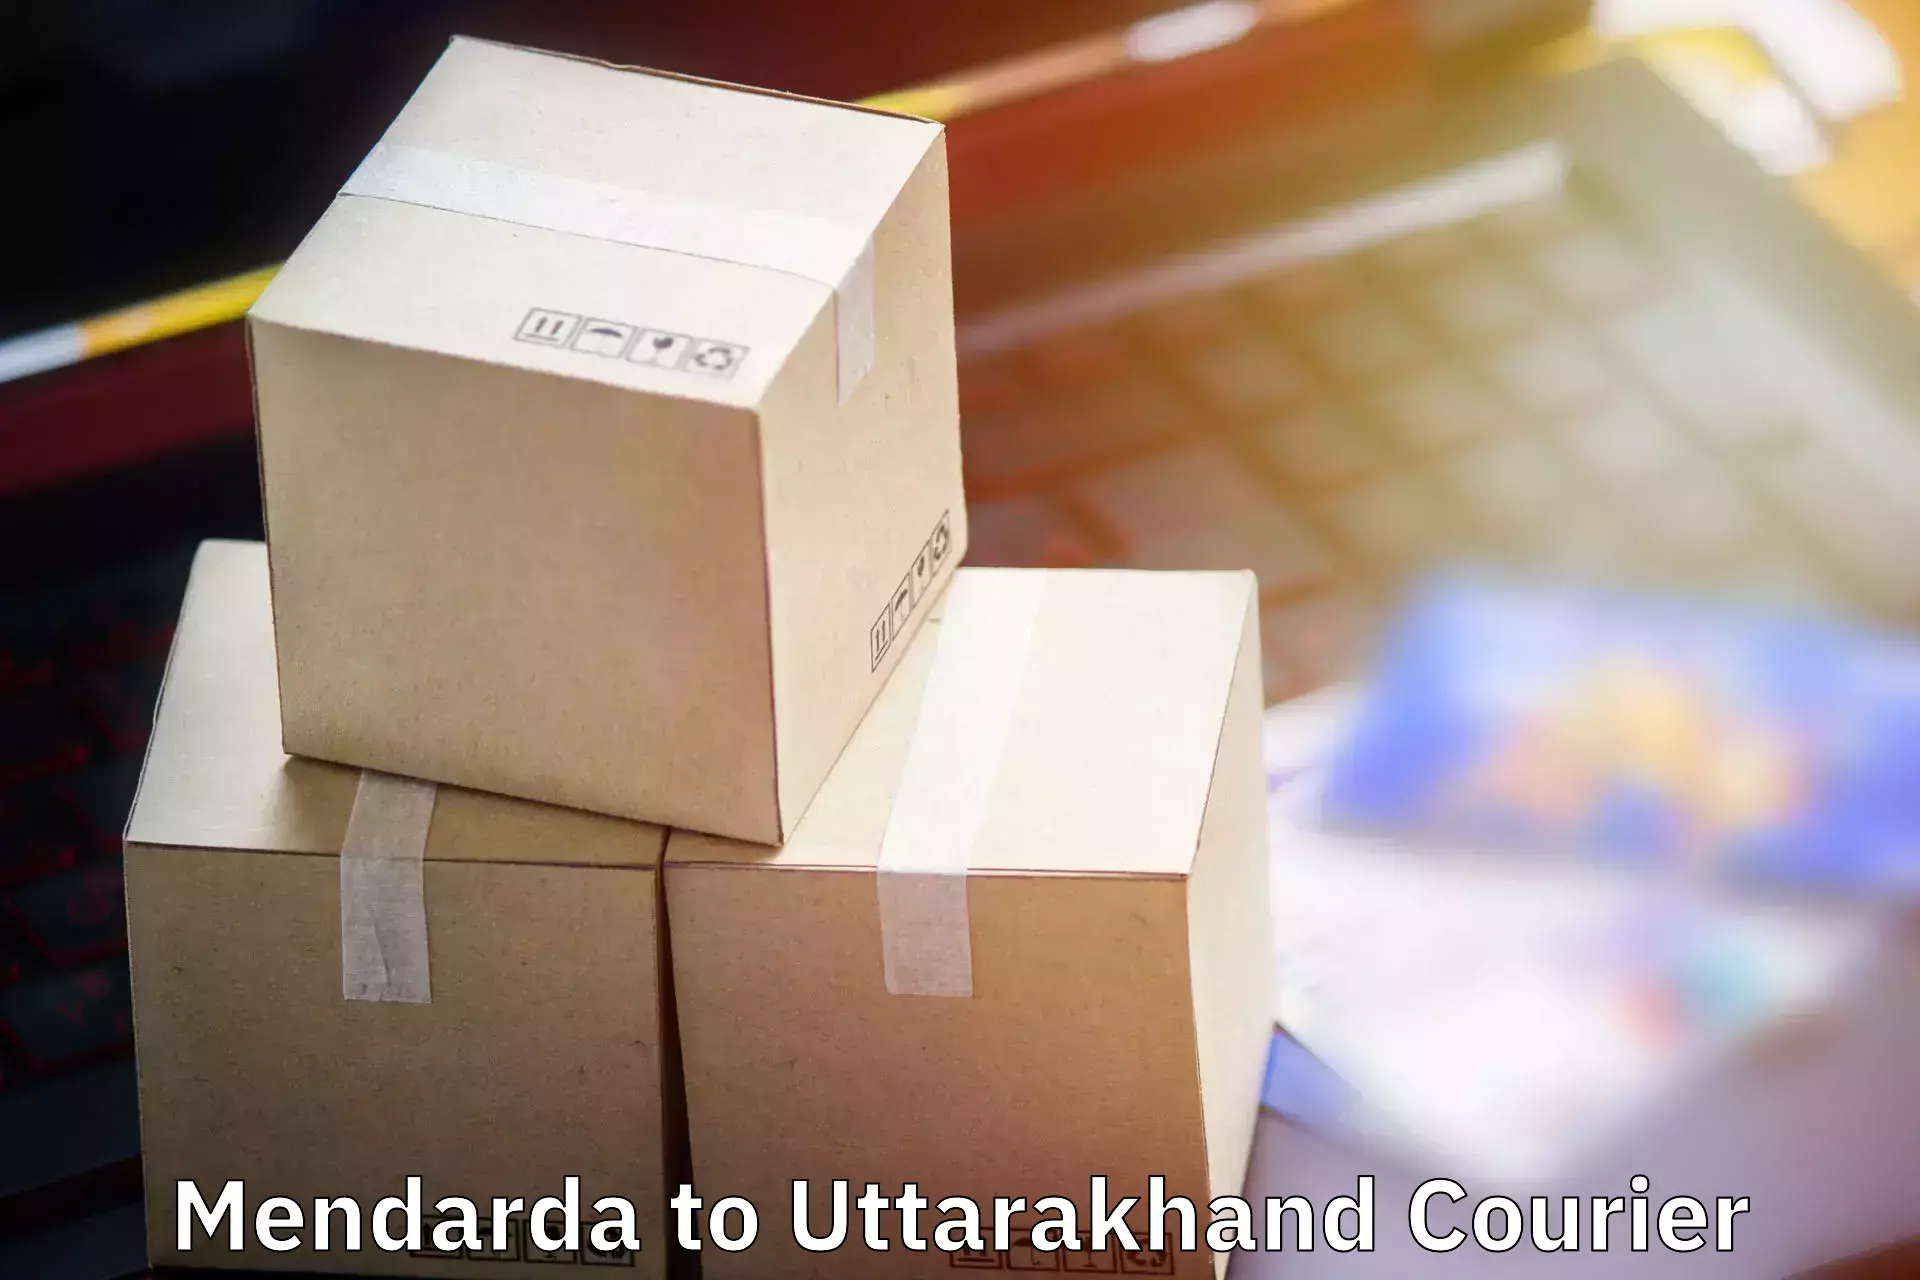 Baggage shipping schedule Mendarda to Pithoragarh